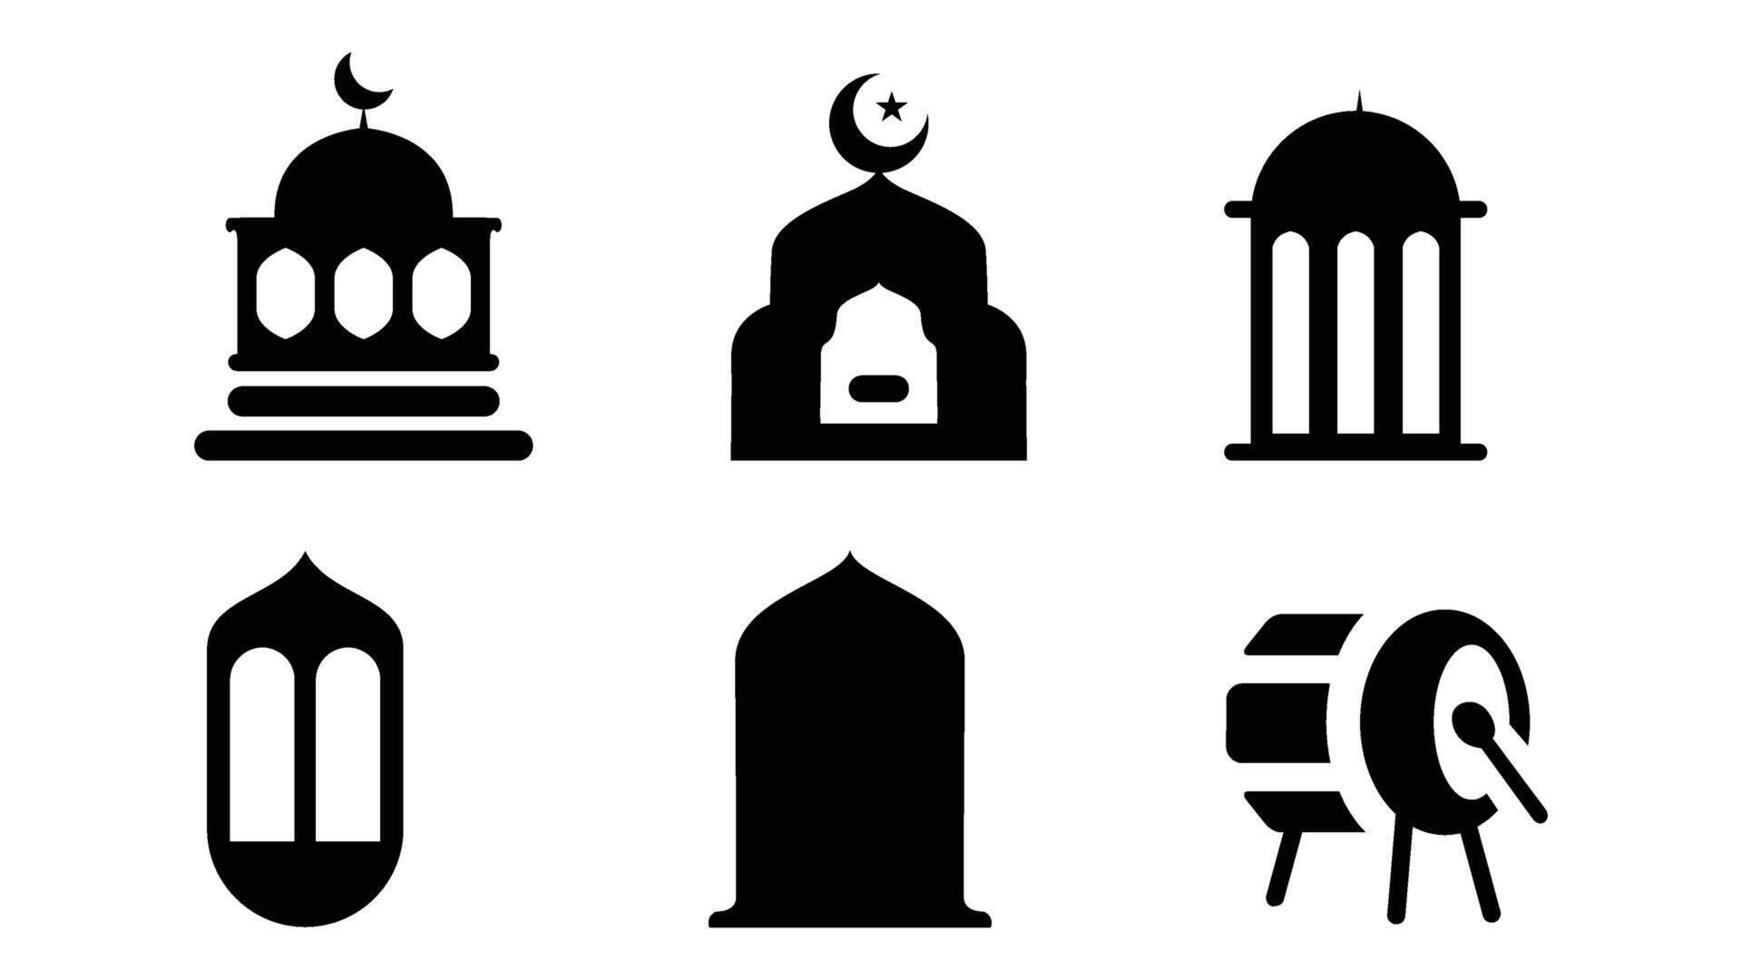 Islamic icons set. Arabic symbols isolated on white background vector